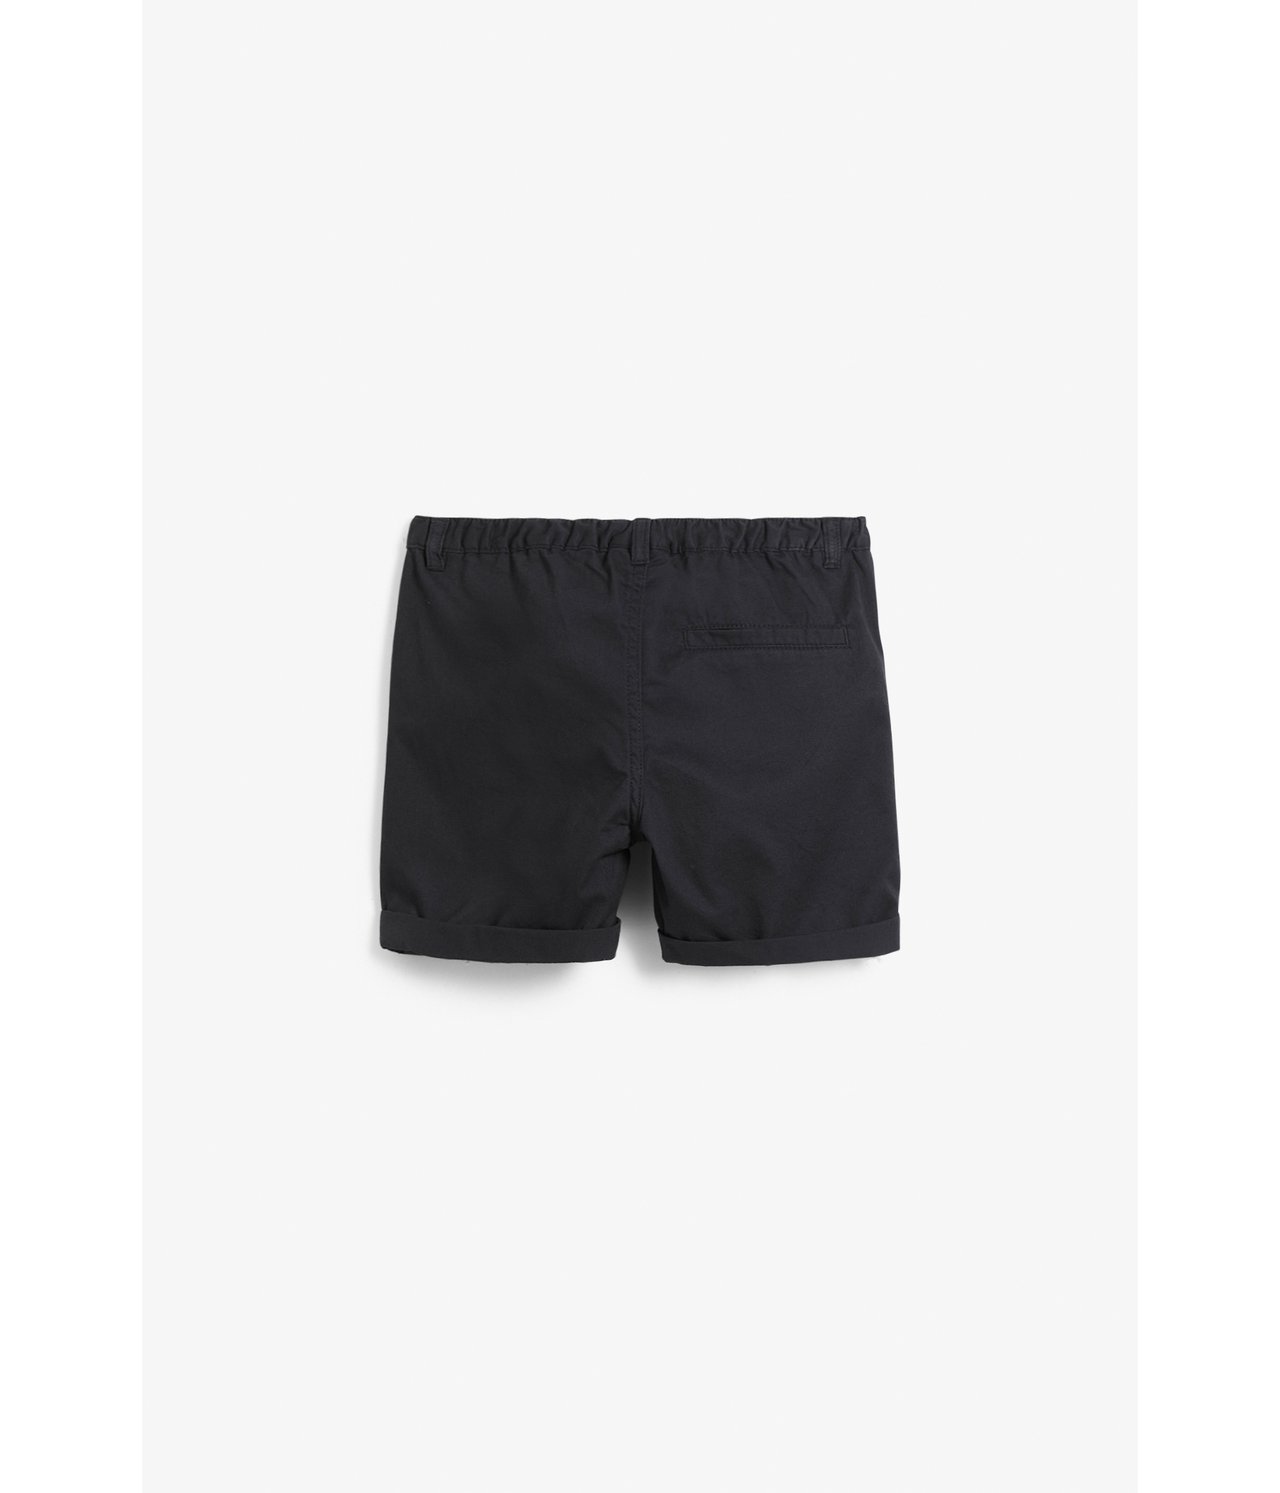 Vevd shorts - Svart - 3